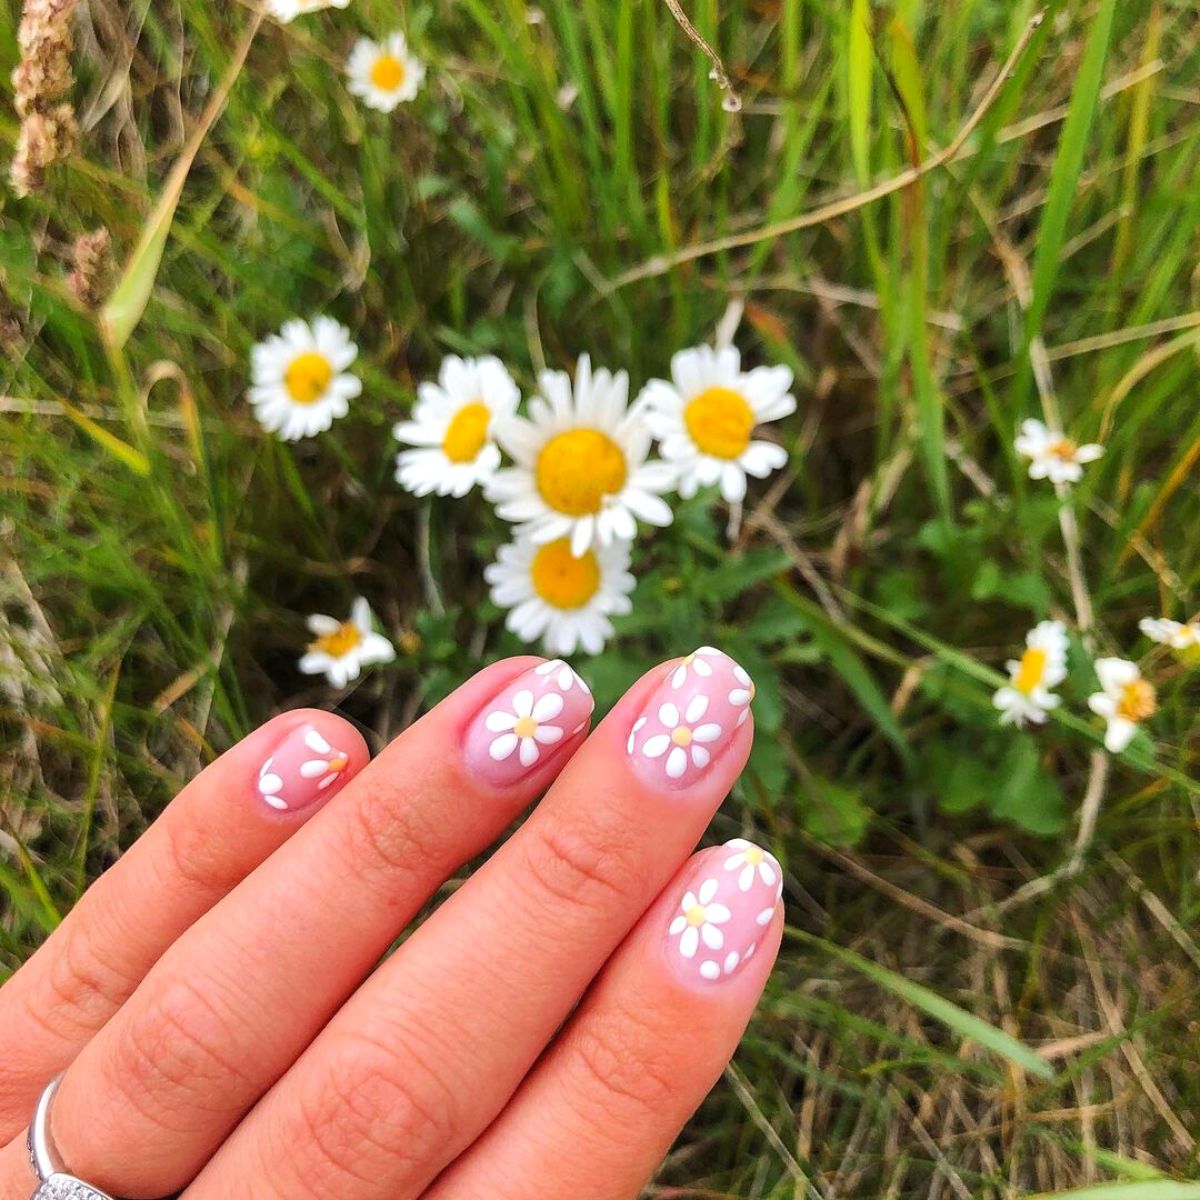 Daisy nail art with daisy background